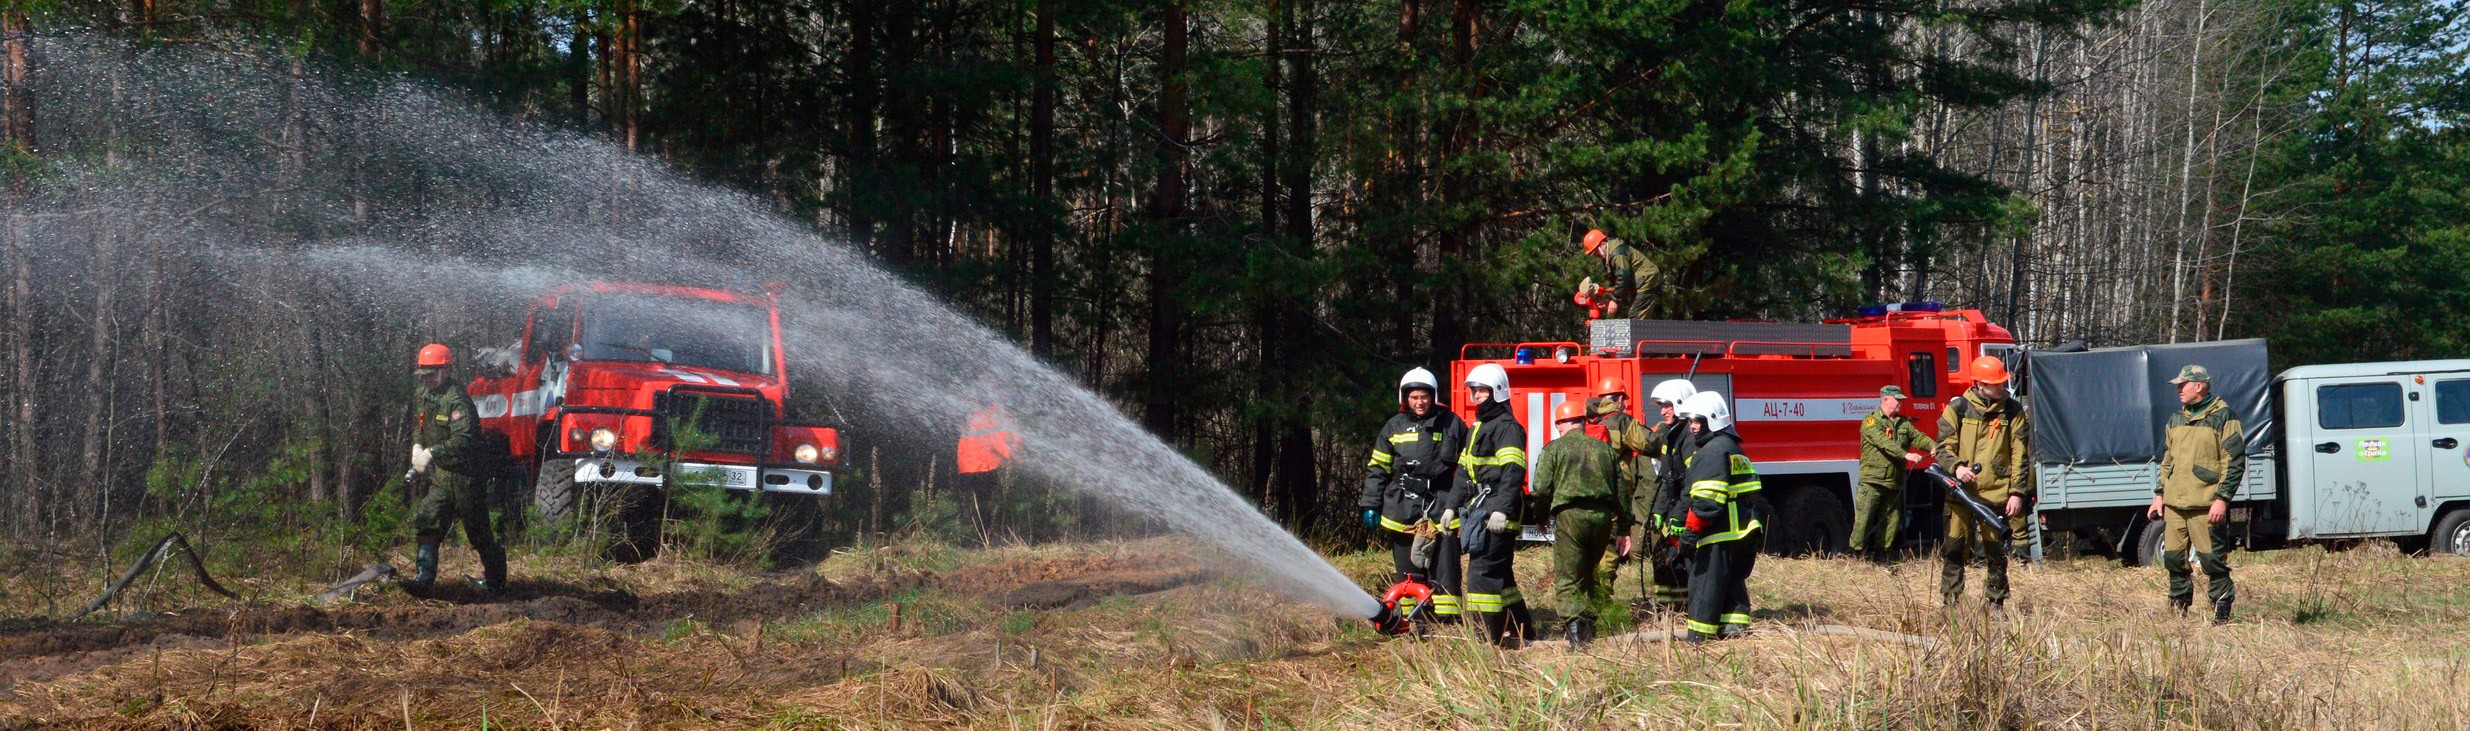 Практический опыт применения лесопожарной службы беспилотников DJI - Общественная безопасность